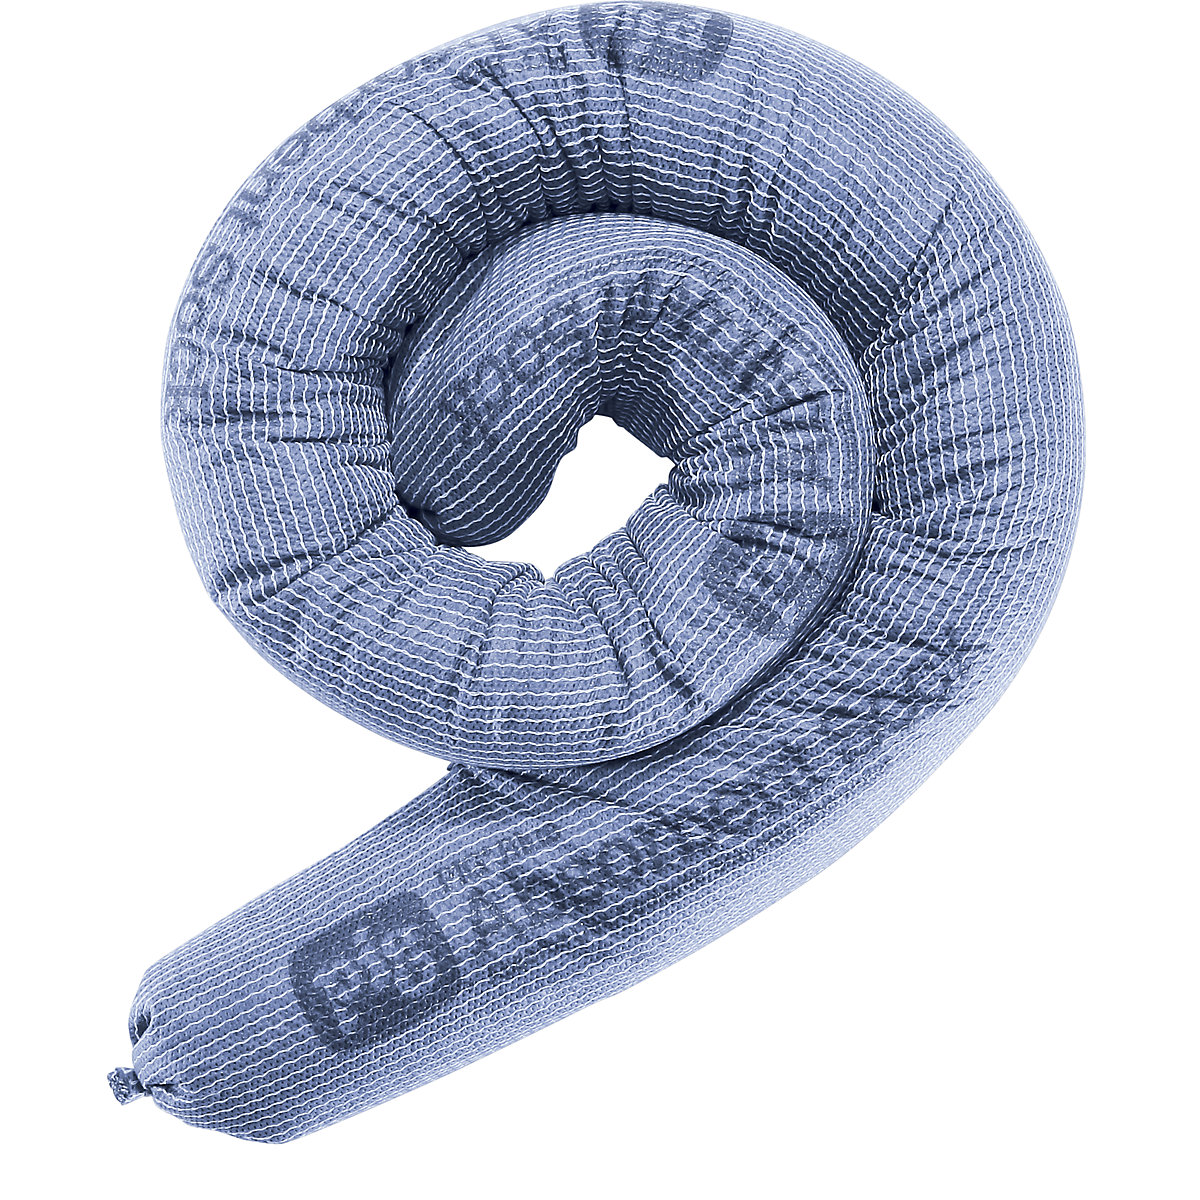 PIG – Univerzální nasákavá hadice ze sorpční textilie BLUE, bal.j. 20 ks, Ø 80 mm, délka 1220 mm